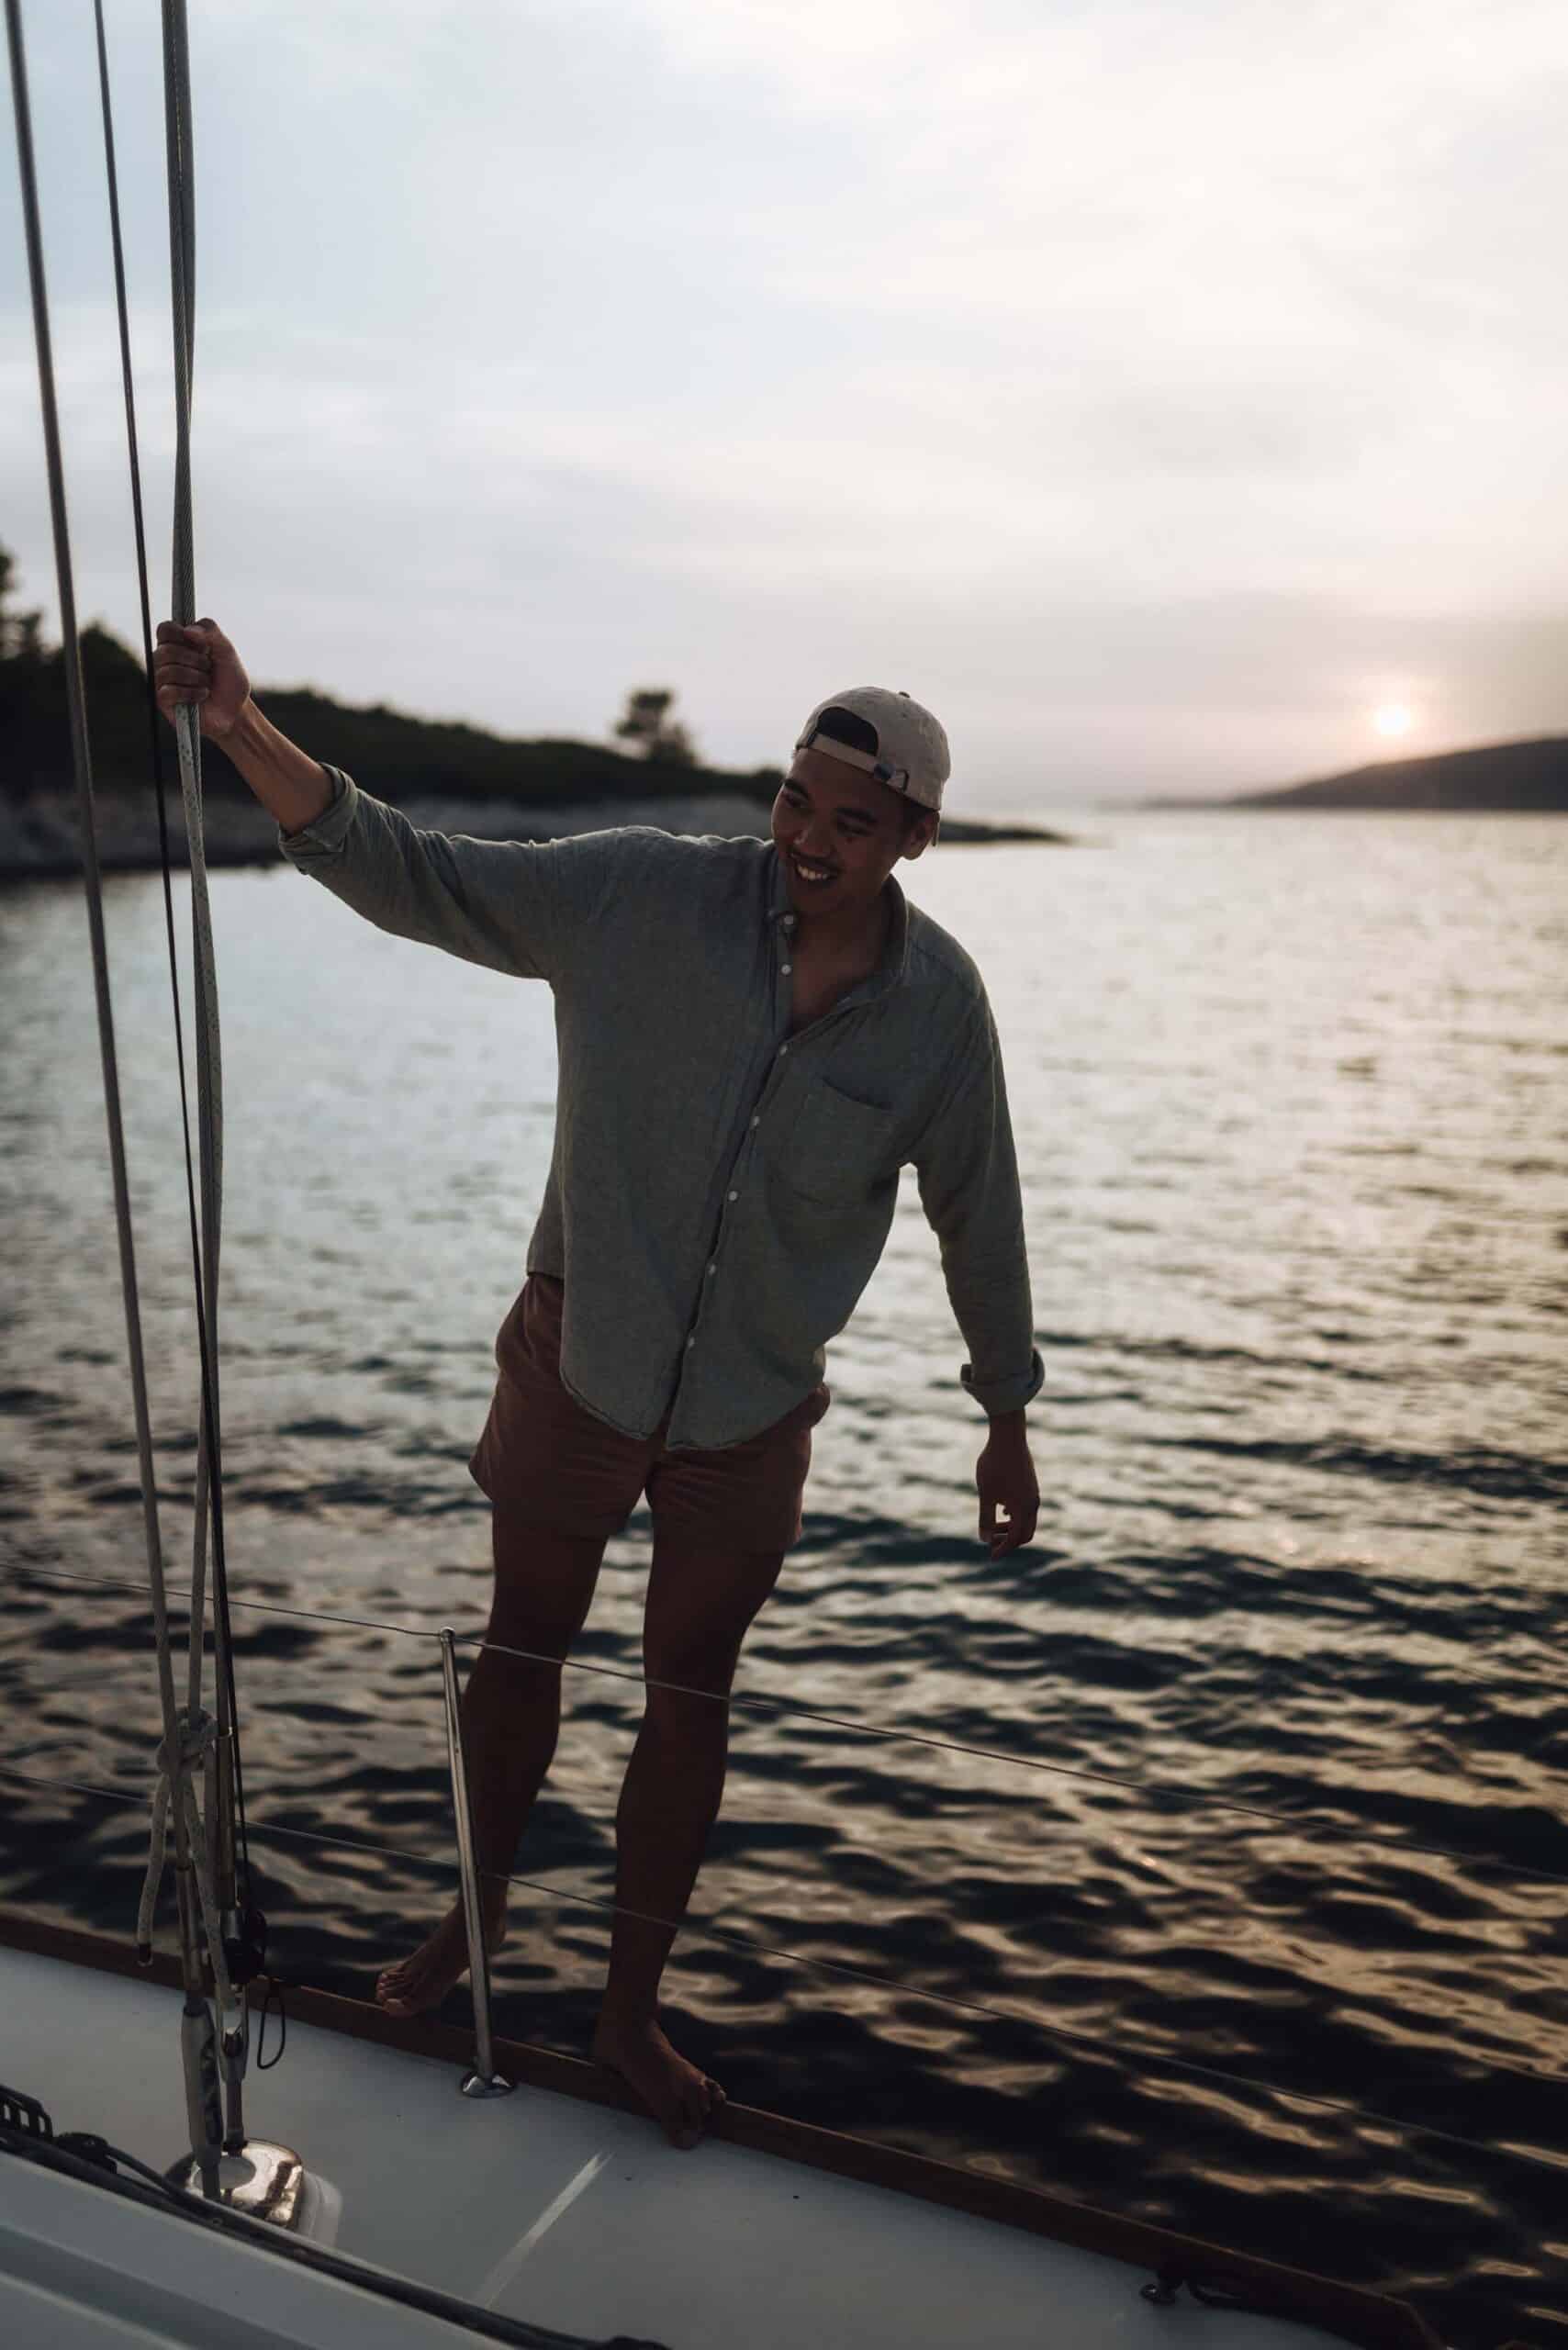 Ein Mann in Freizeitkleidung lächelt, während er auf einem Katamaran steht und ein Seil hält, mit einem ruhigen Sonnenuntergang über dem Wasser im Hintergrund.